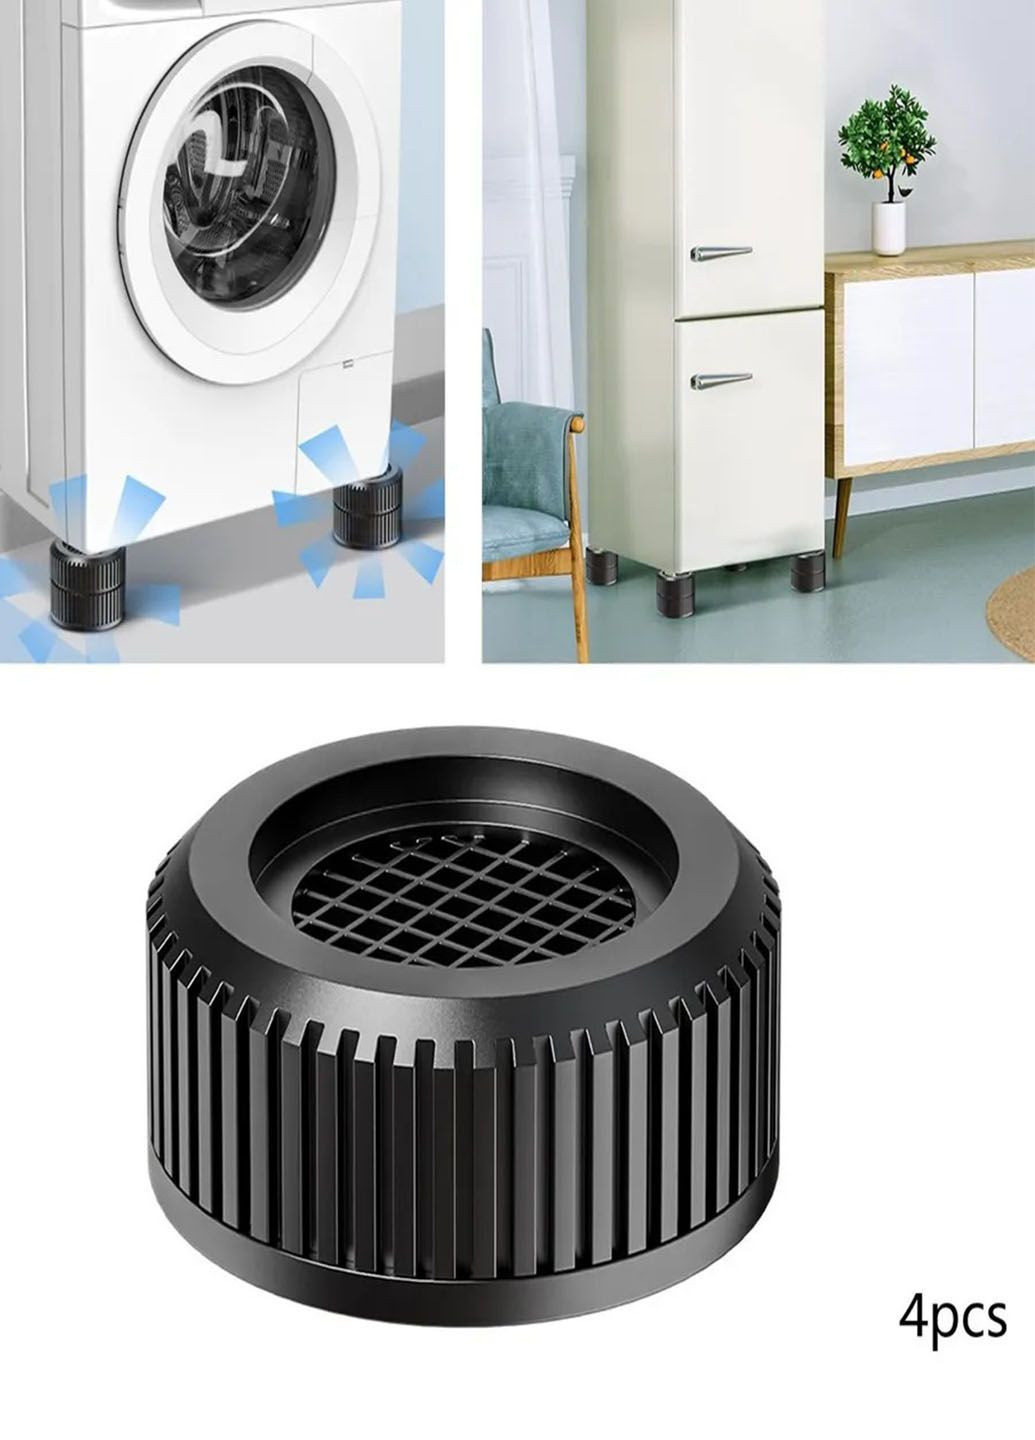 Подставки антивибрационные NEW для стиральной машины и мебели 4 шт 7,3 см*3.3 см Good Idea (290049477)